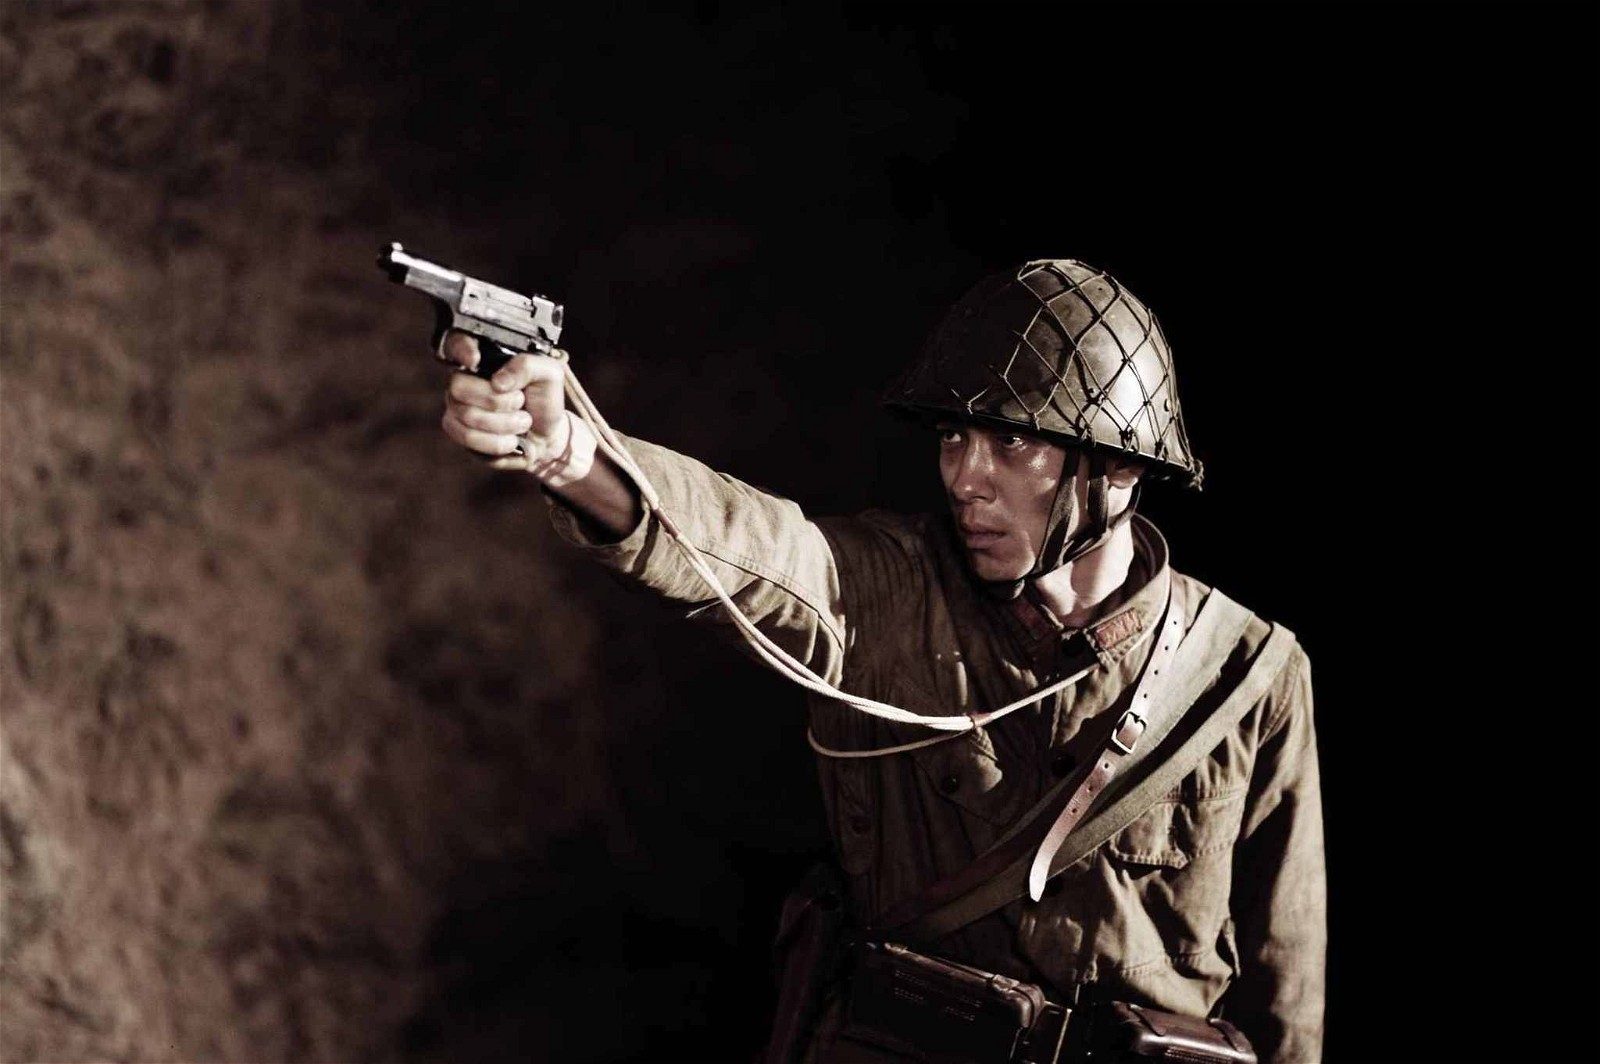 Steven Spielberg produced Clint Eastwood's Oscar-winning film Letters from Iwo Jima